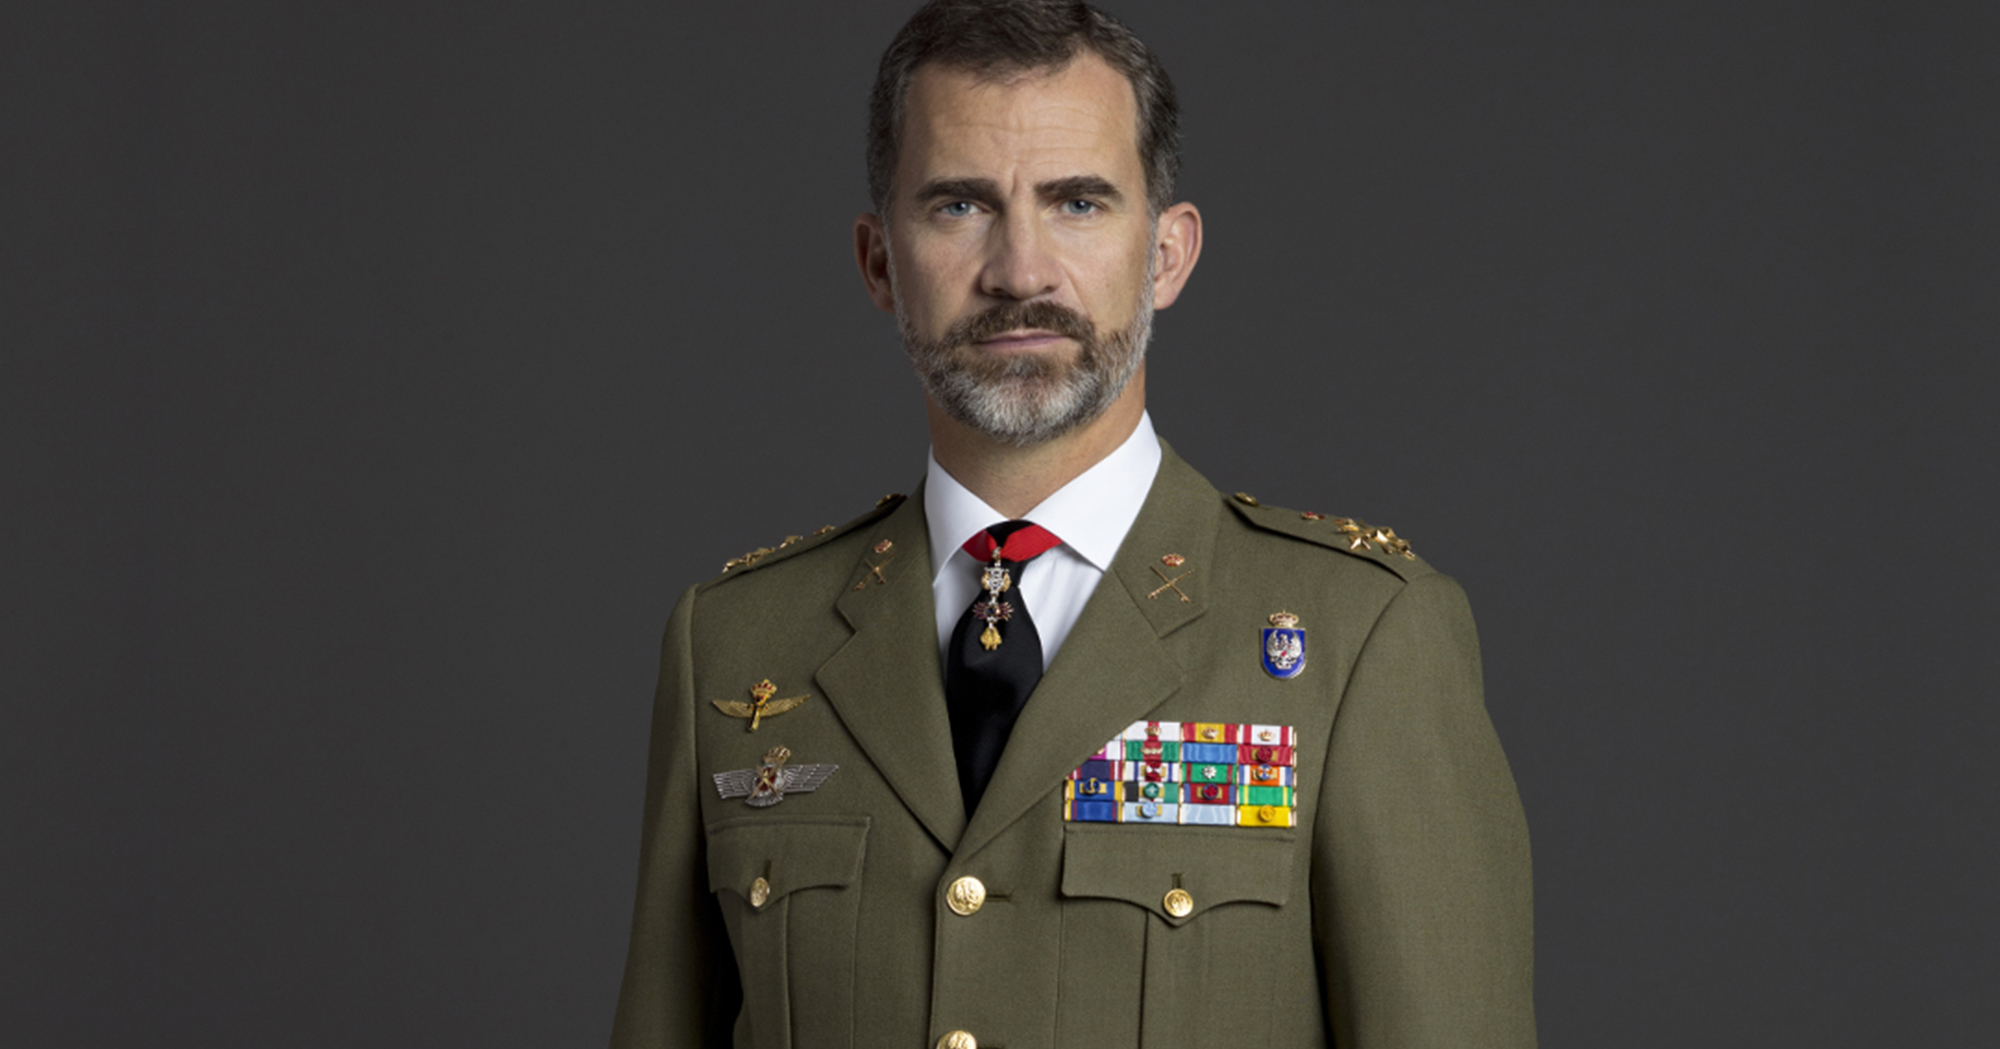 Uniformes militares españoles: gala y de especial relevancia en el Ejército de Tierra